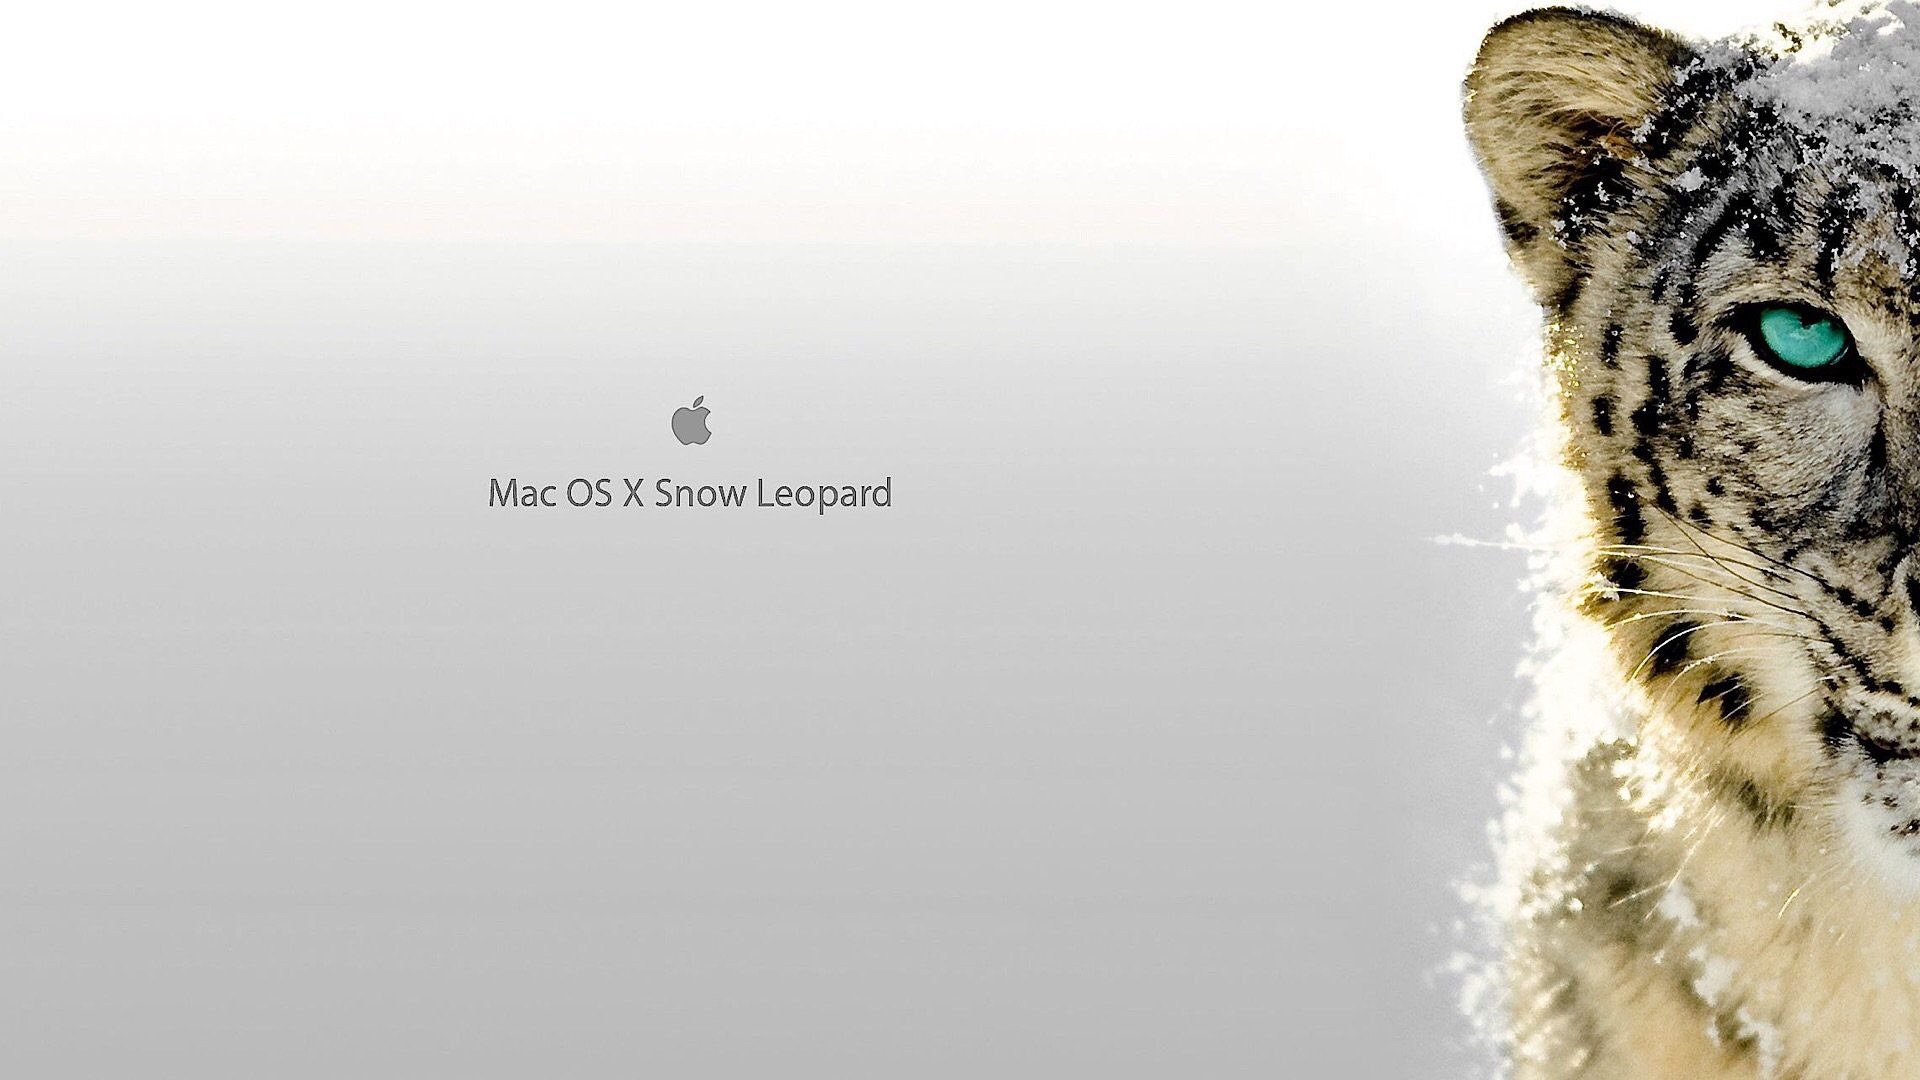 Этот день в истории Apple: впервые представлена обновленная OS X Snow Leopard